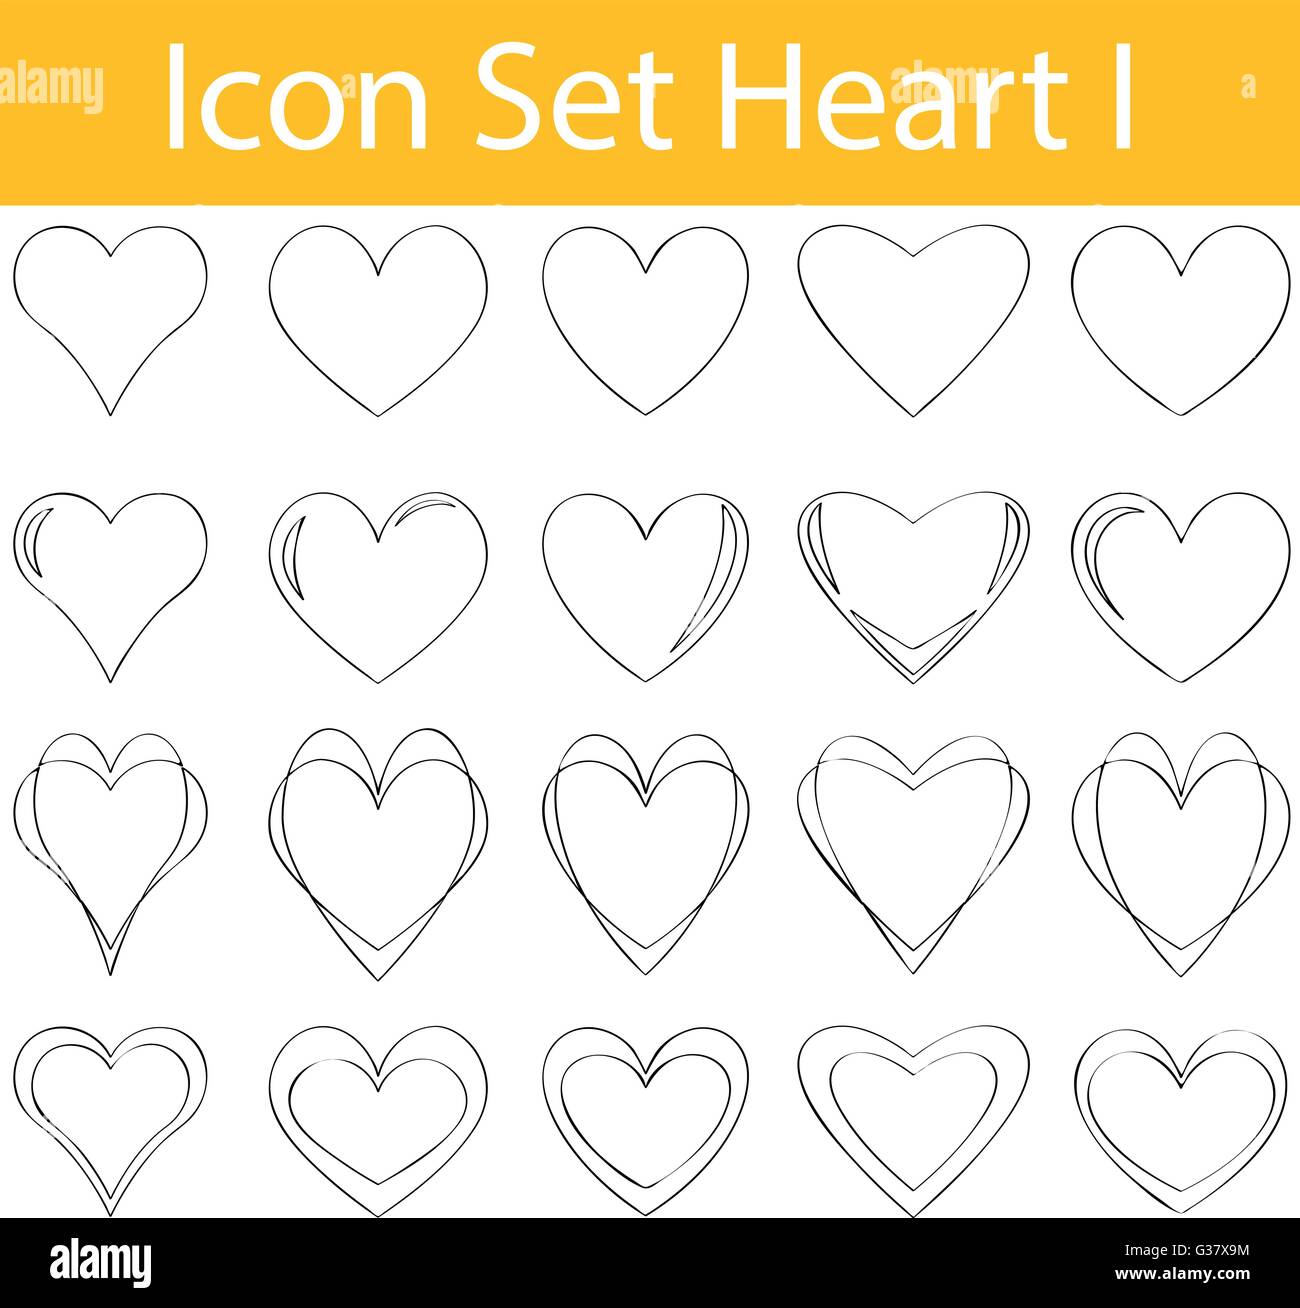 Gezeichnete Doodle ausgekleidet Icon Set Herz gestalte ich mit 20 Icons für den kreativen Einsatz in Grafik Stock Vektor